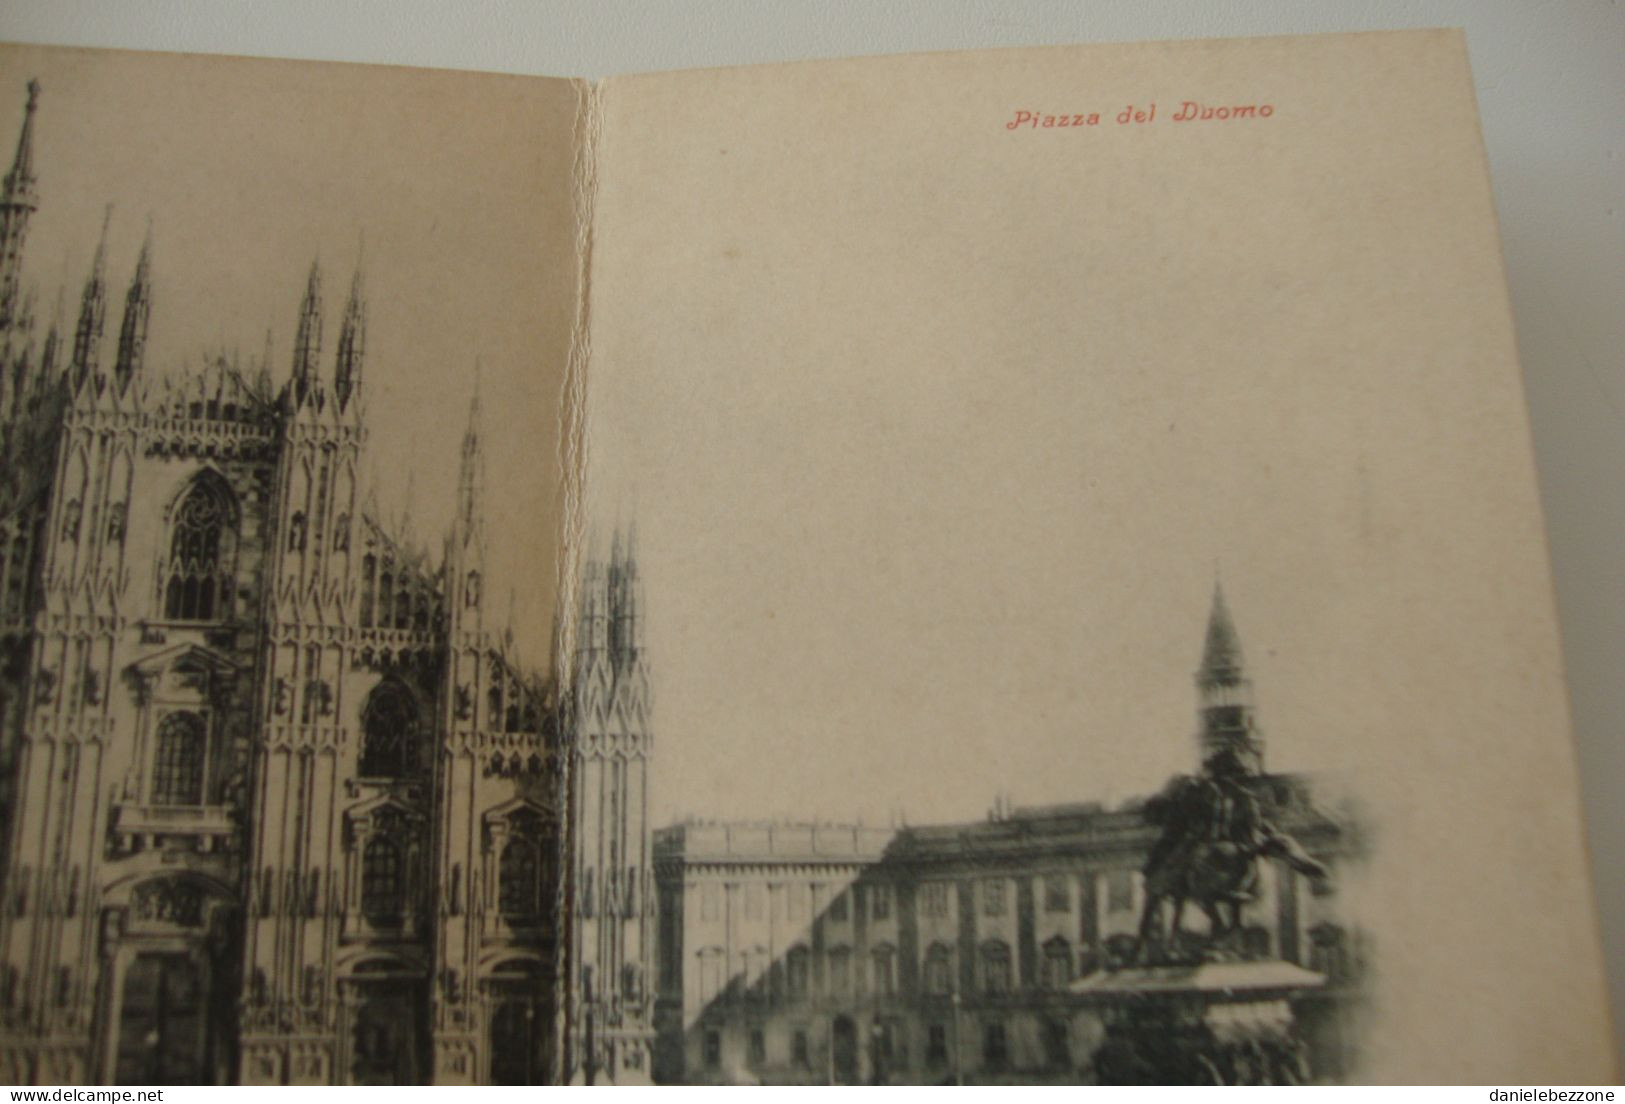 Cartolina D'epoca Tripla Milano Duomo E Piazza Del Duomo - Non Viaggiata - Milano (Milan)